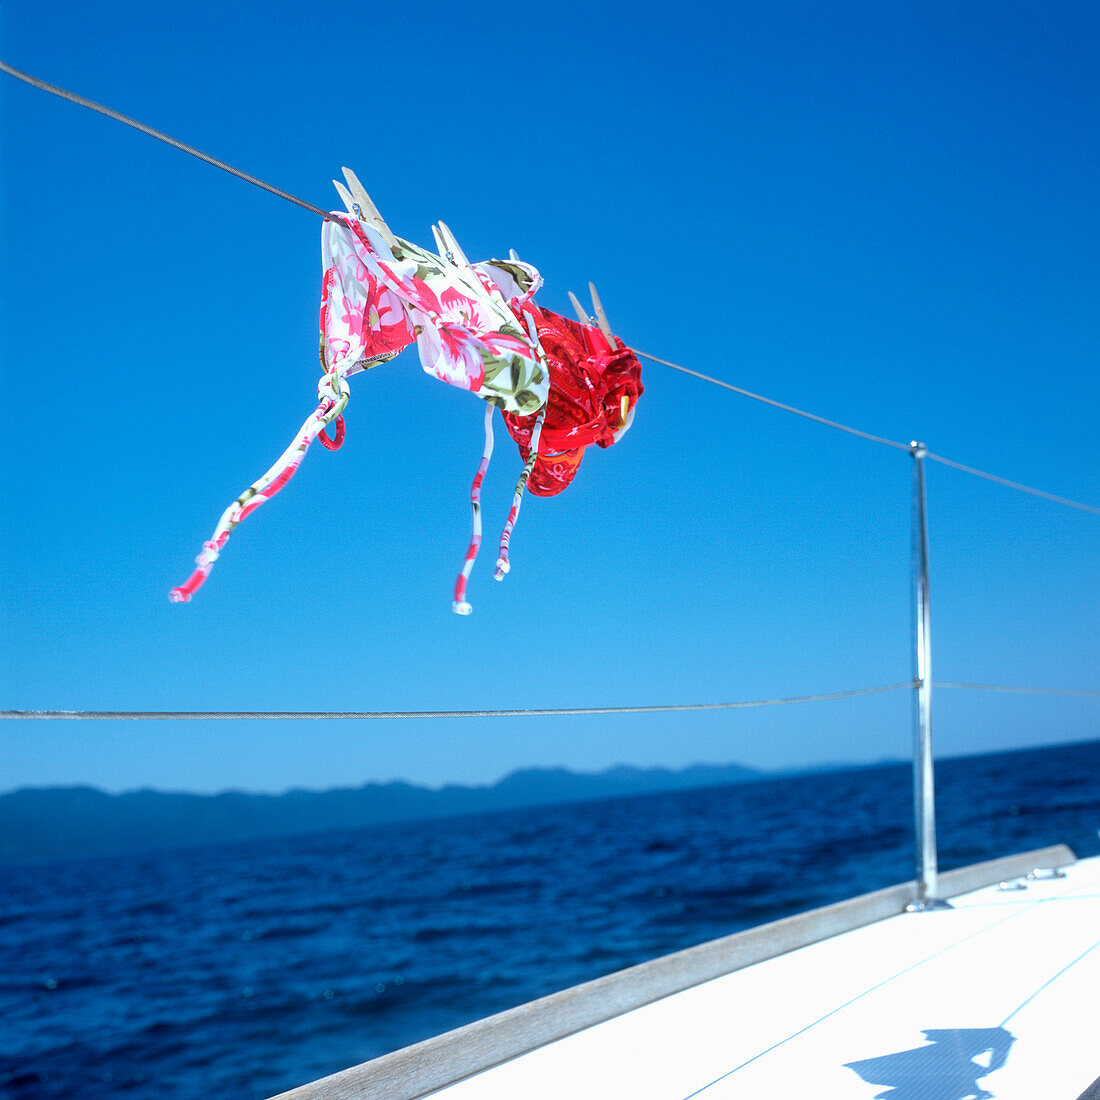 Bikinis hängen auf einer Leine von einem Segelboot zum trocknen, Adria, Dalmatien, Kroatien